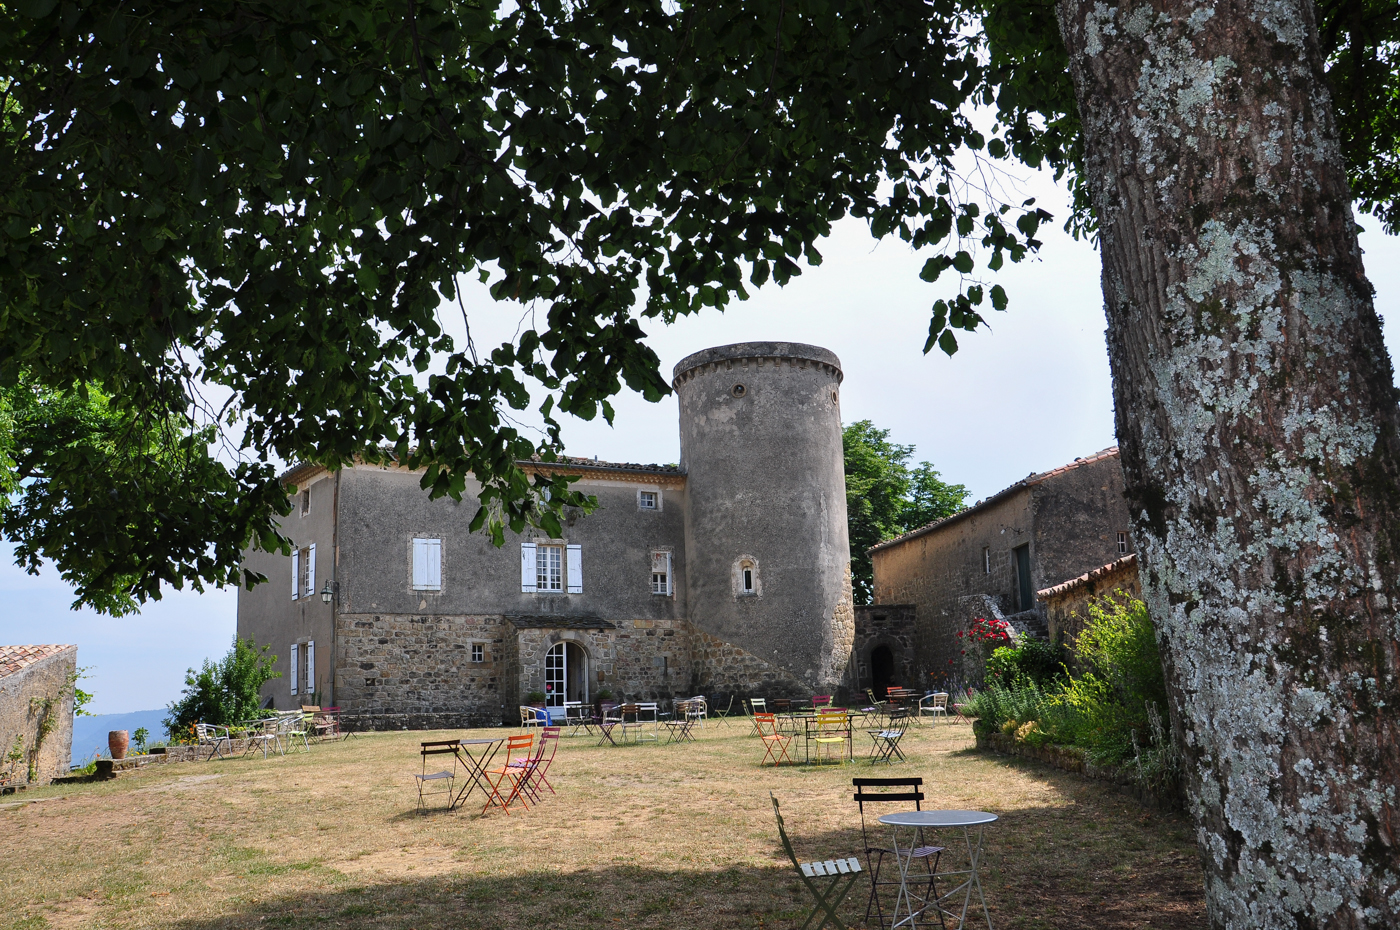 Louer une salle : Château de Liviers - Location de salles / location du site (espace privatisé)